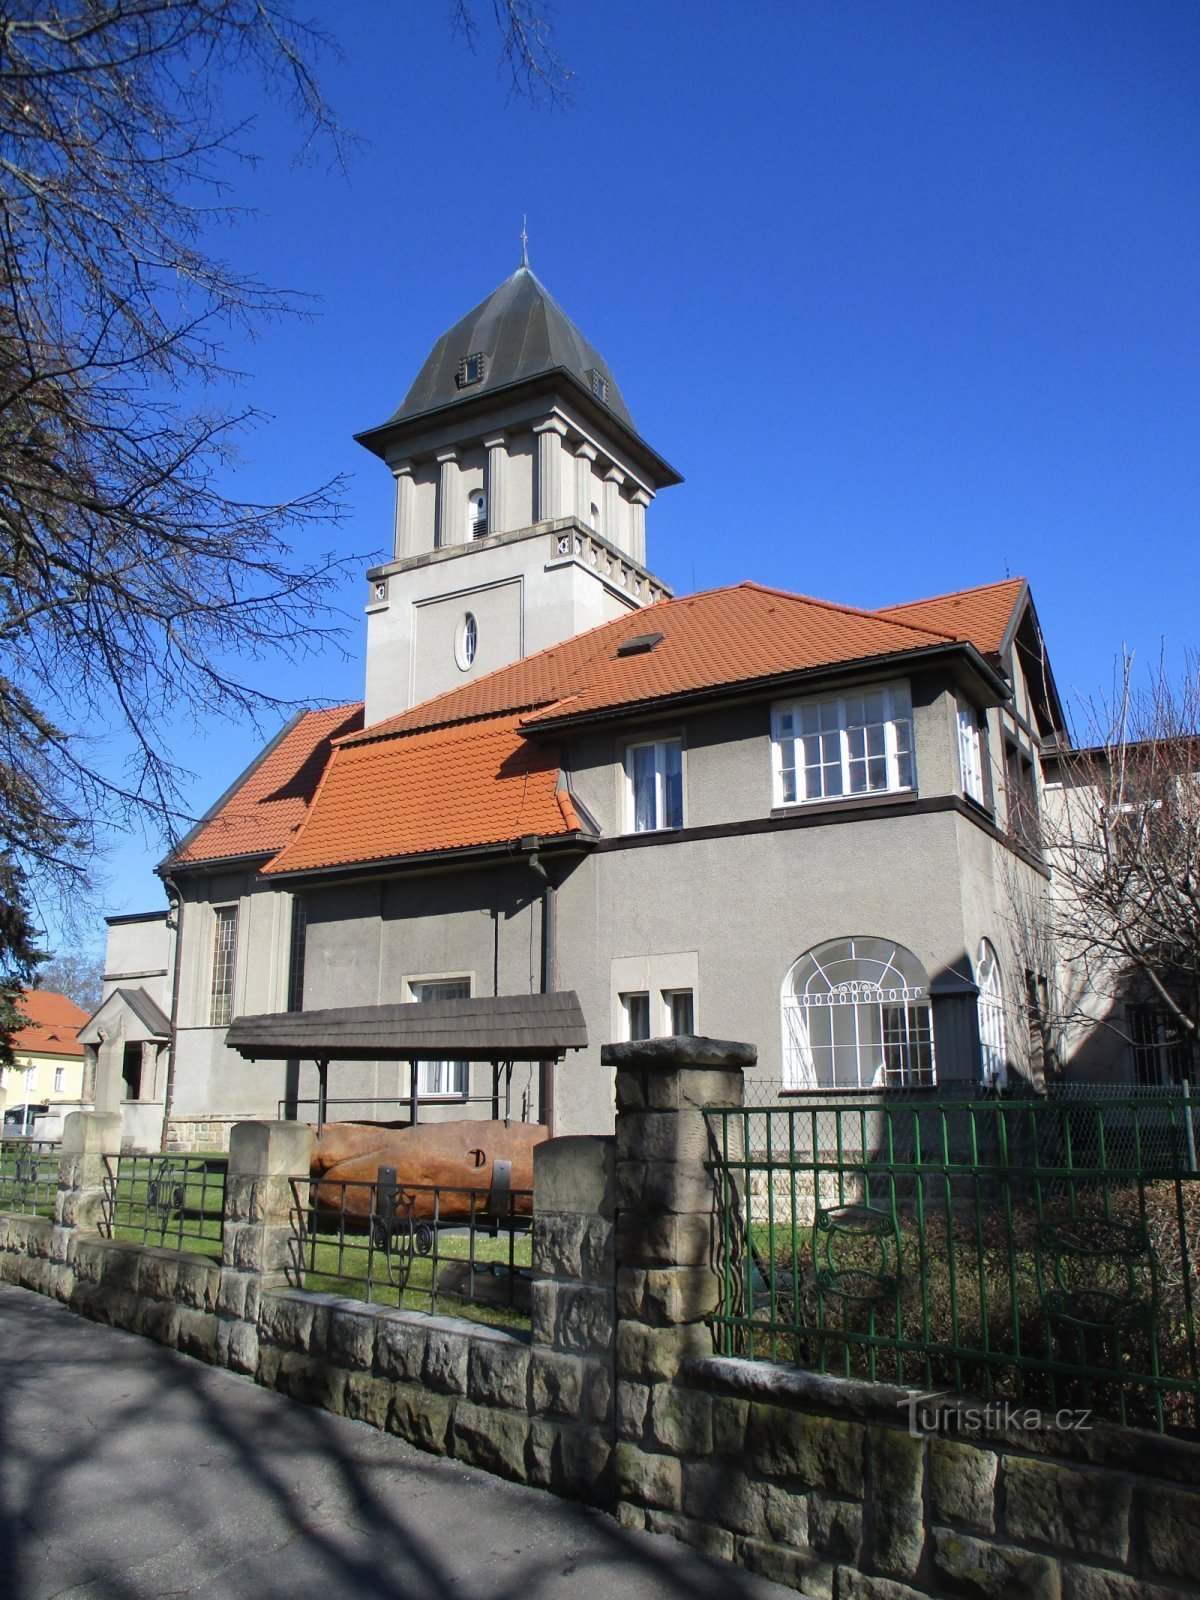 Evangelisk kirke med præstegård (Hradec Králové, 19.3.2020/XNUMX/XNUMX)